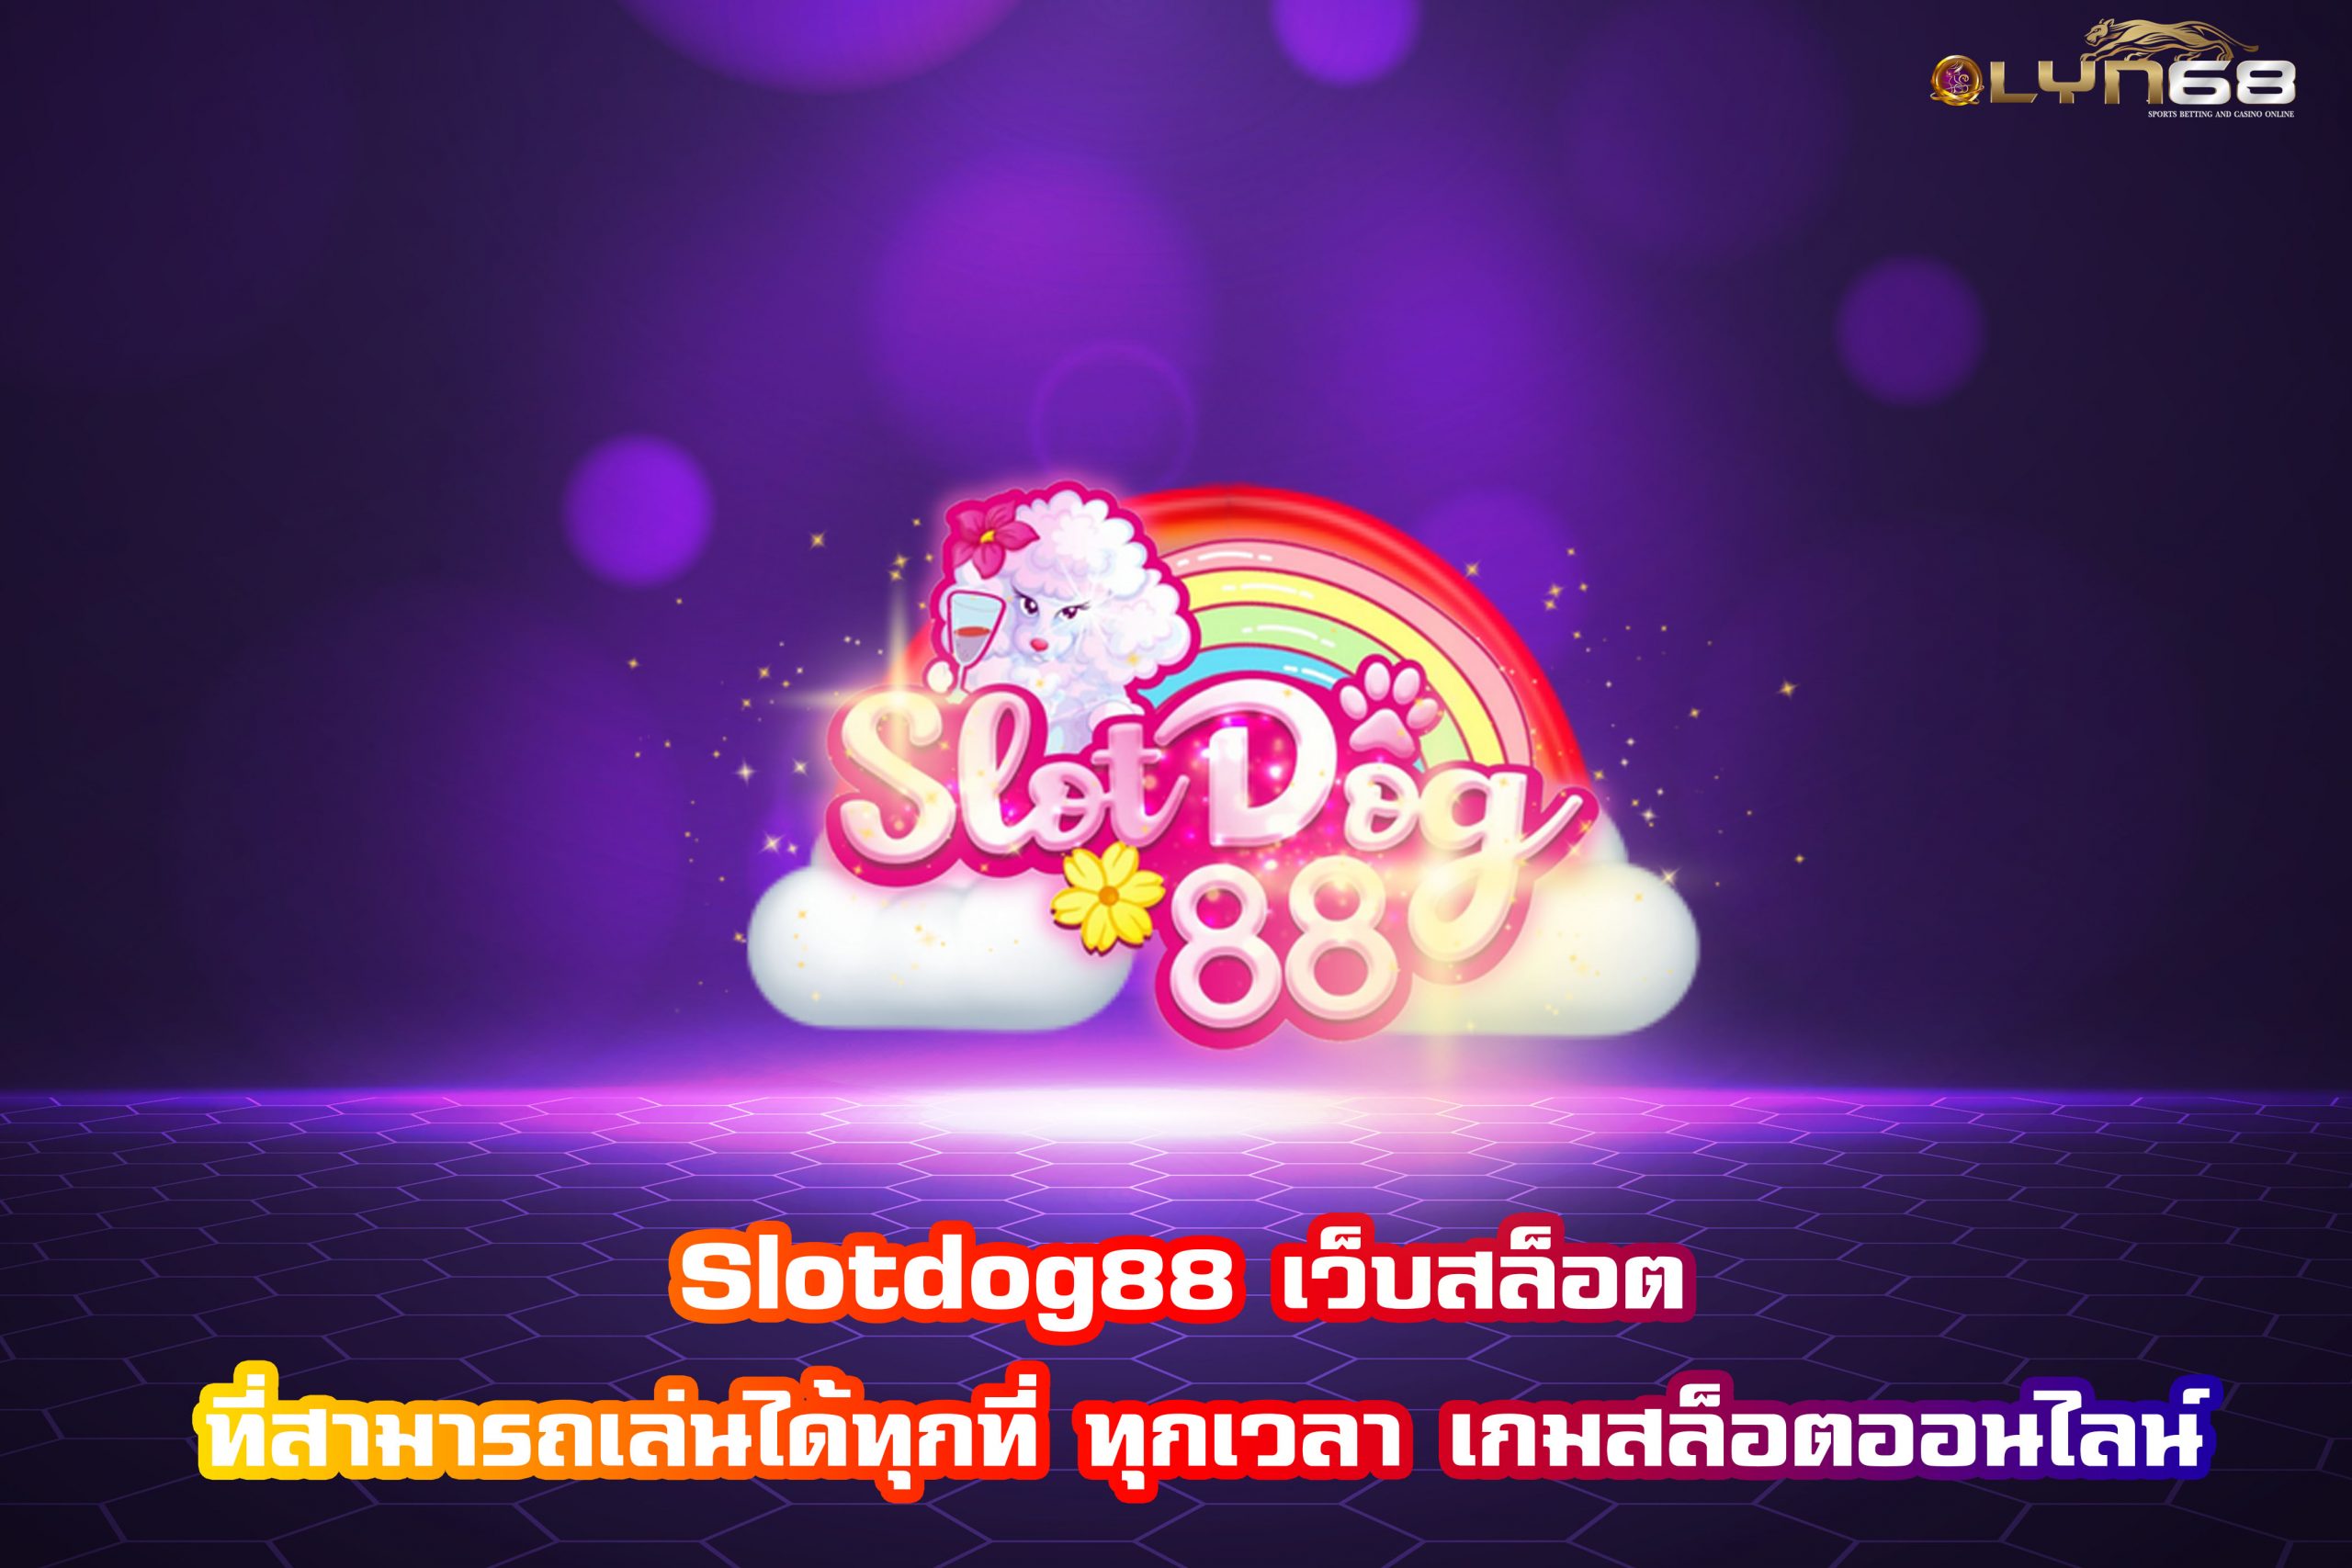 Slotdog88 เว็บสล็อต ที่สามารถเล่นได้ทุกที่ ทุกเวลา เกมสล็อตออนไลน์